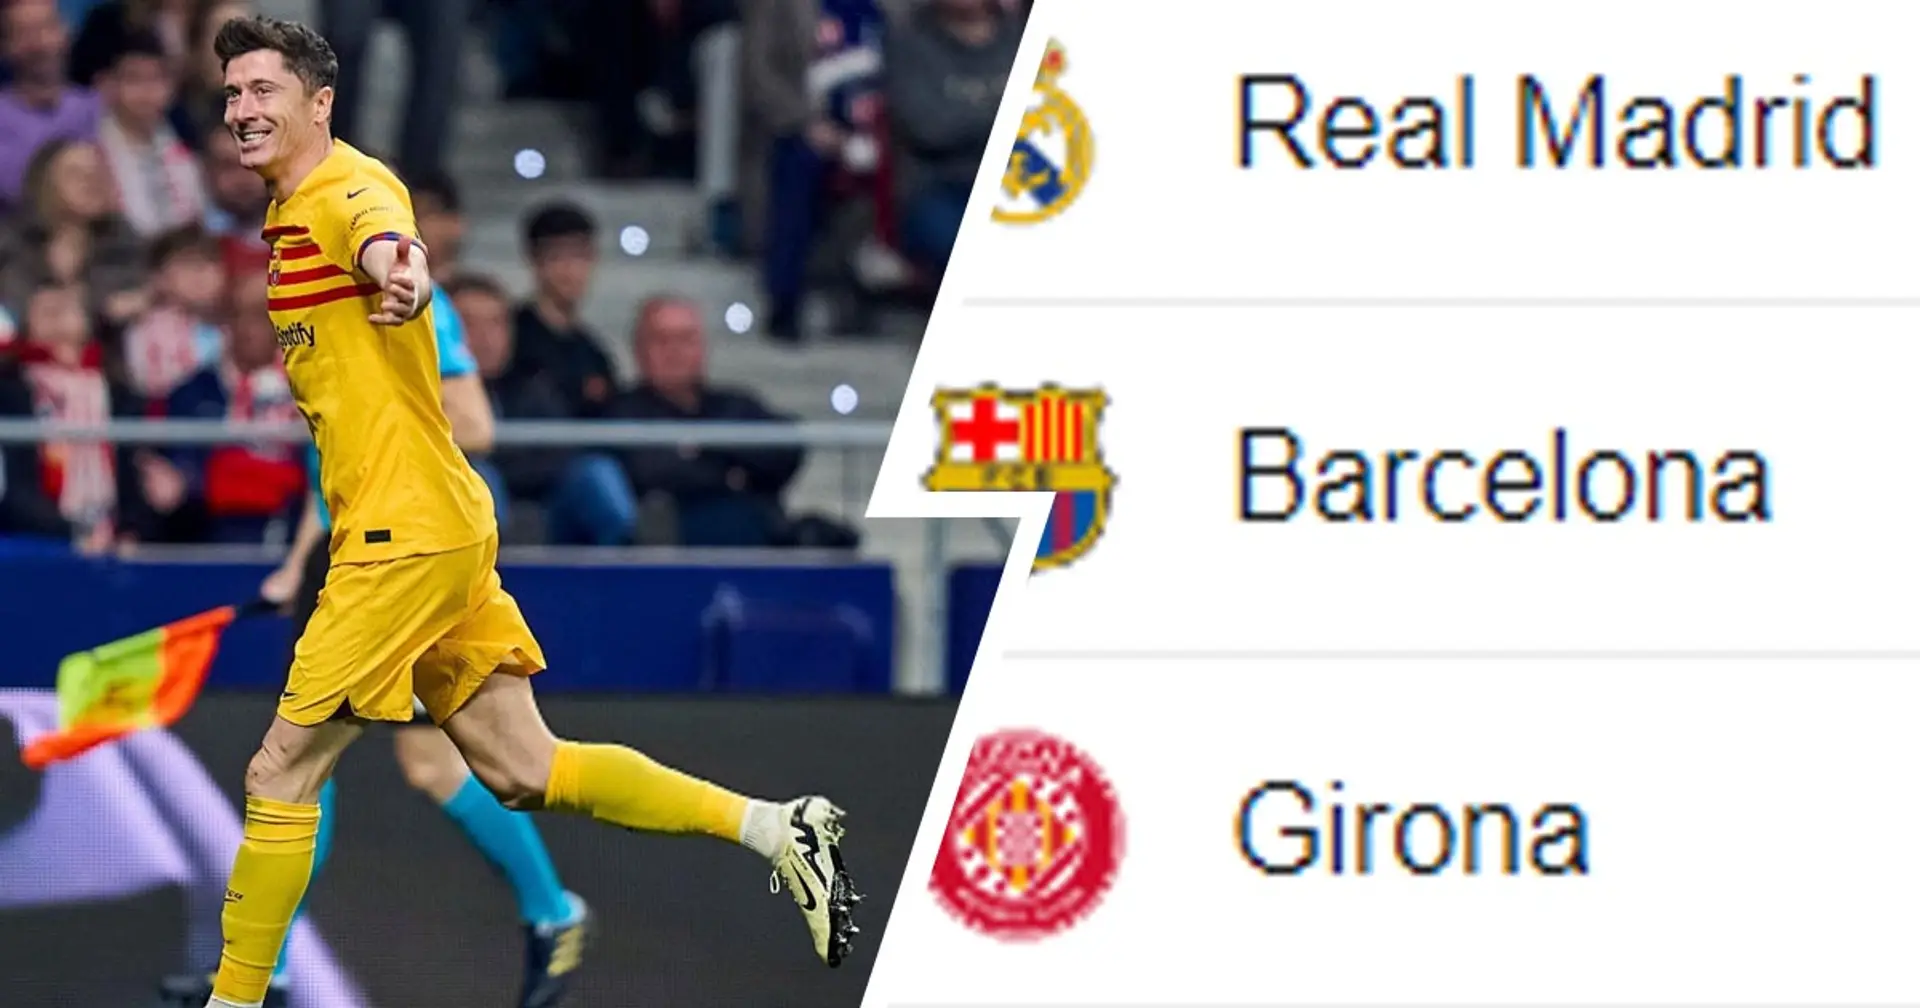 El Barça supera al Girona: así queda la clasificación de La Liga tras la goleada vs Atlético de Madrid